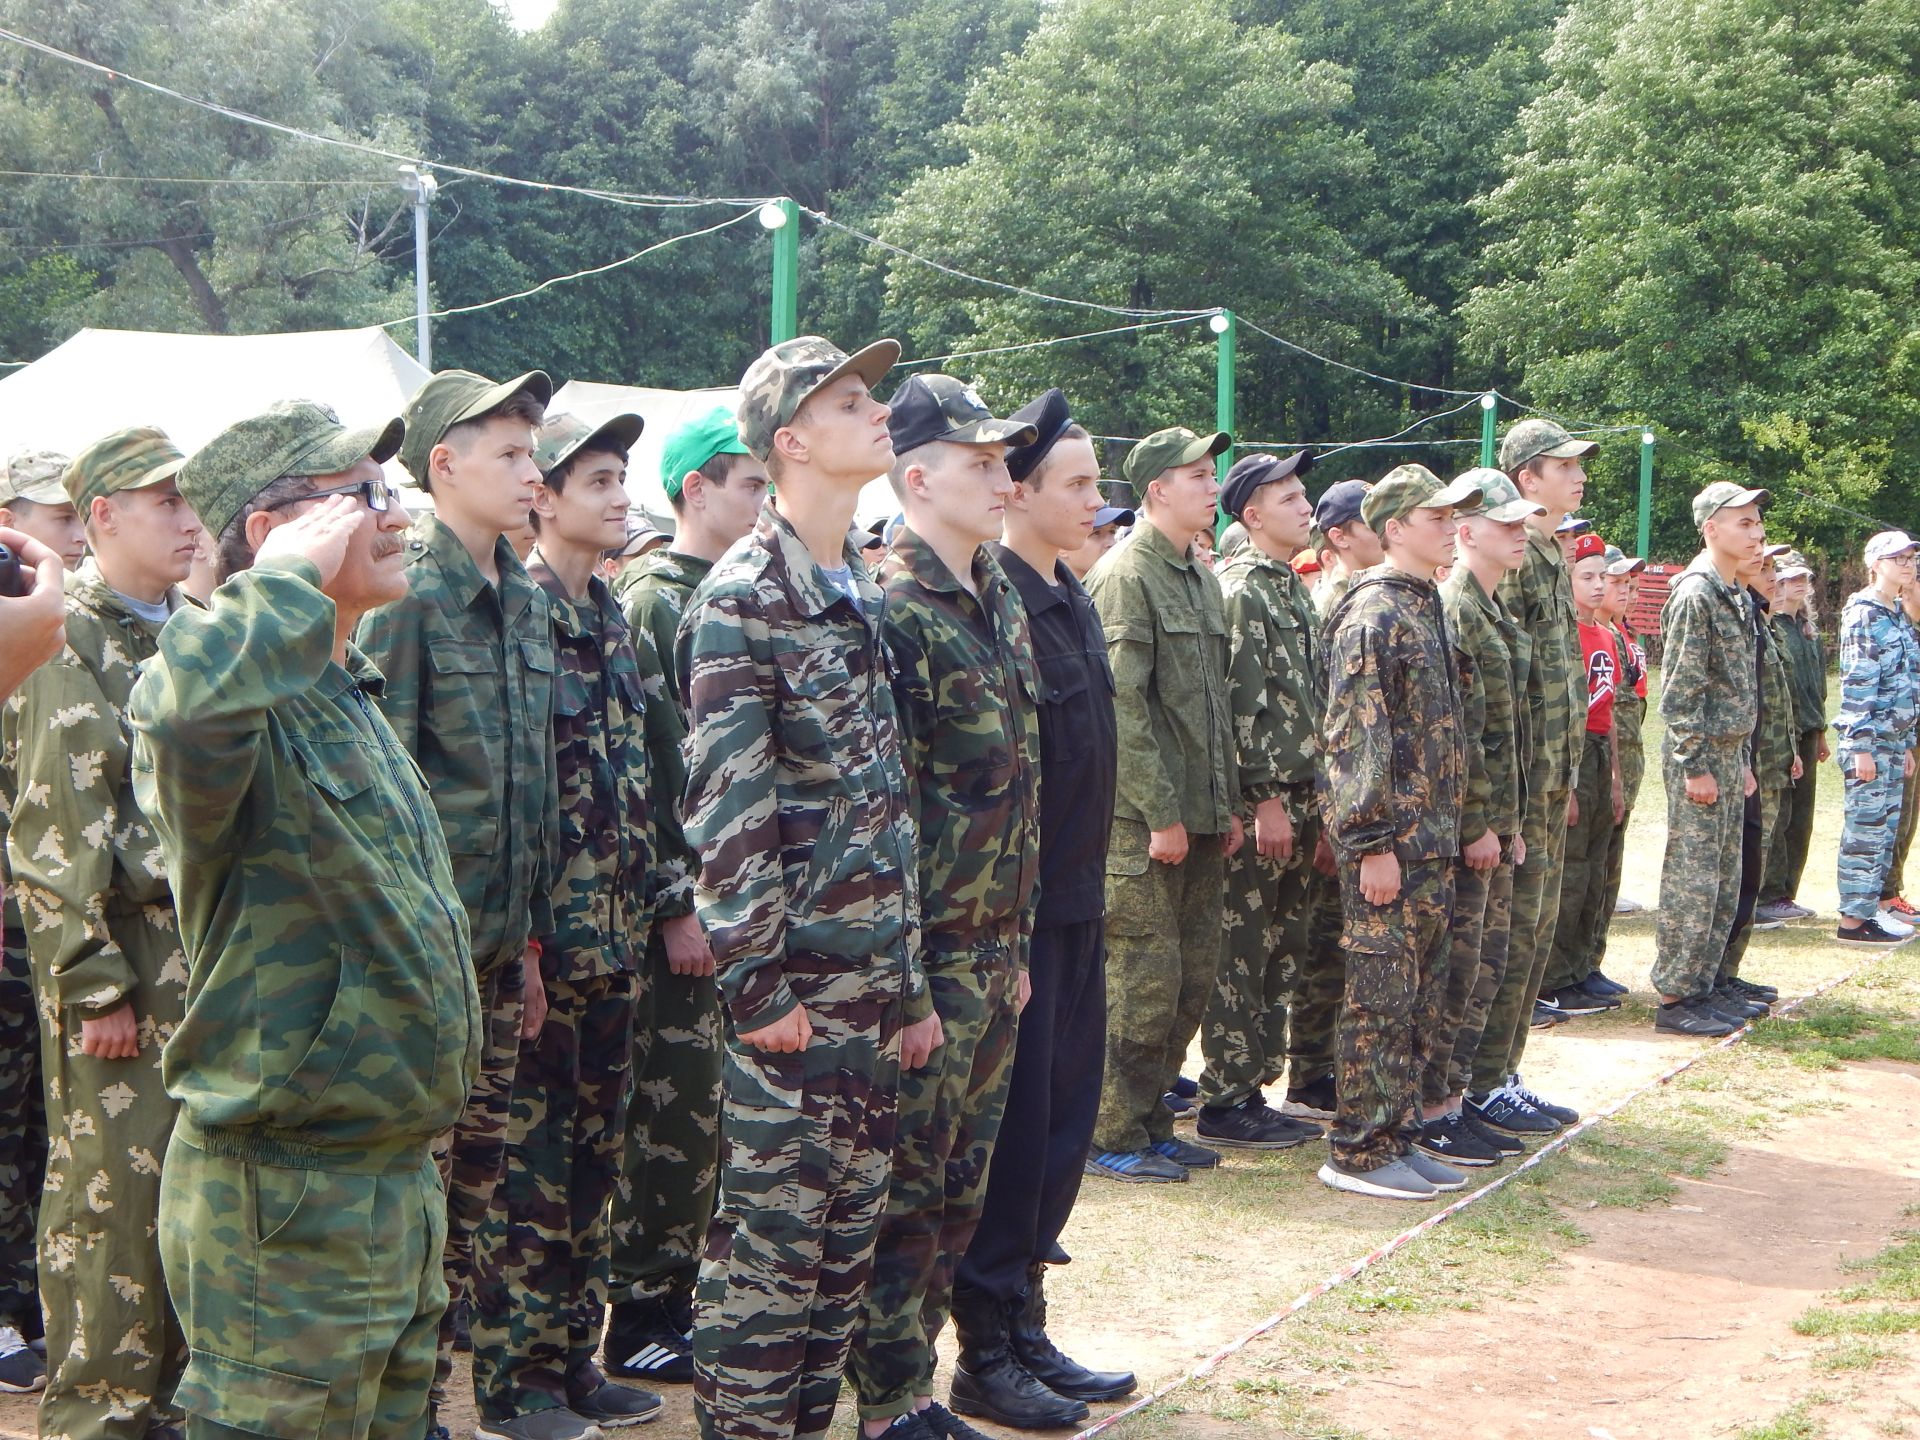 В Камских Полянах состоялось торжественное открытие заключительной смены лагерного сбора "Зарница"